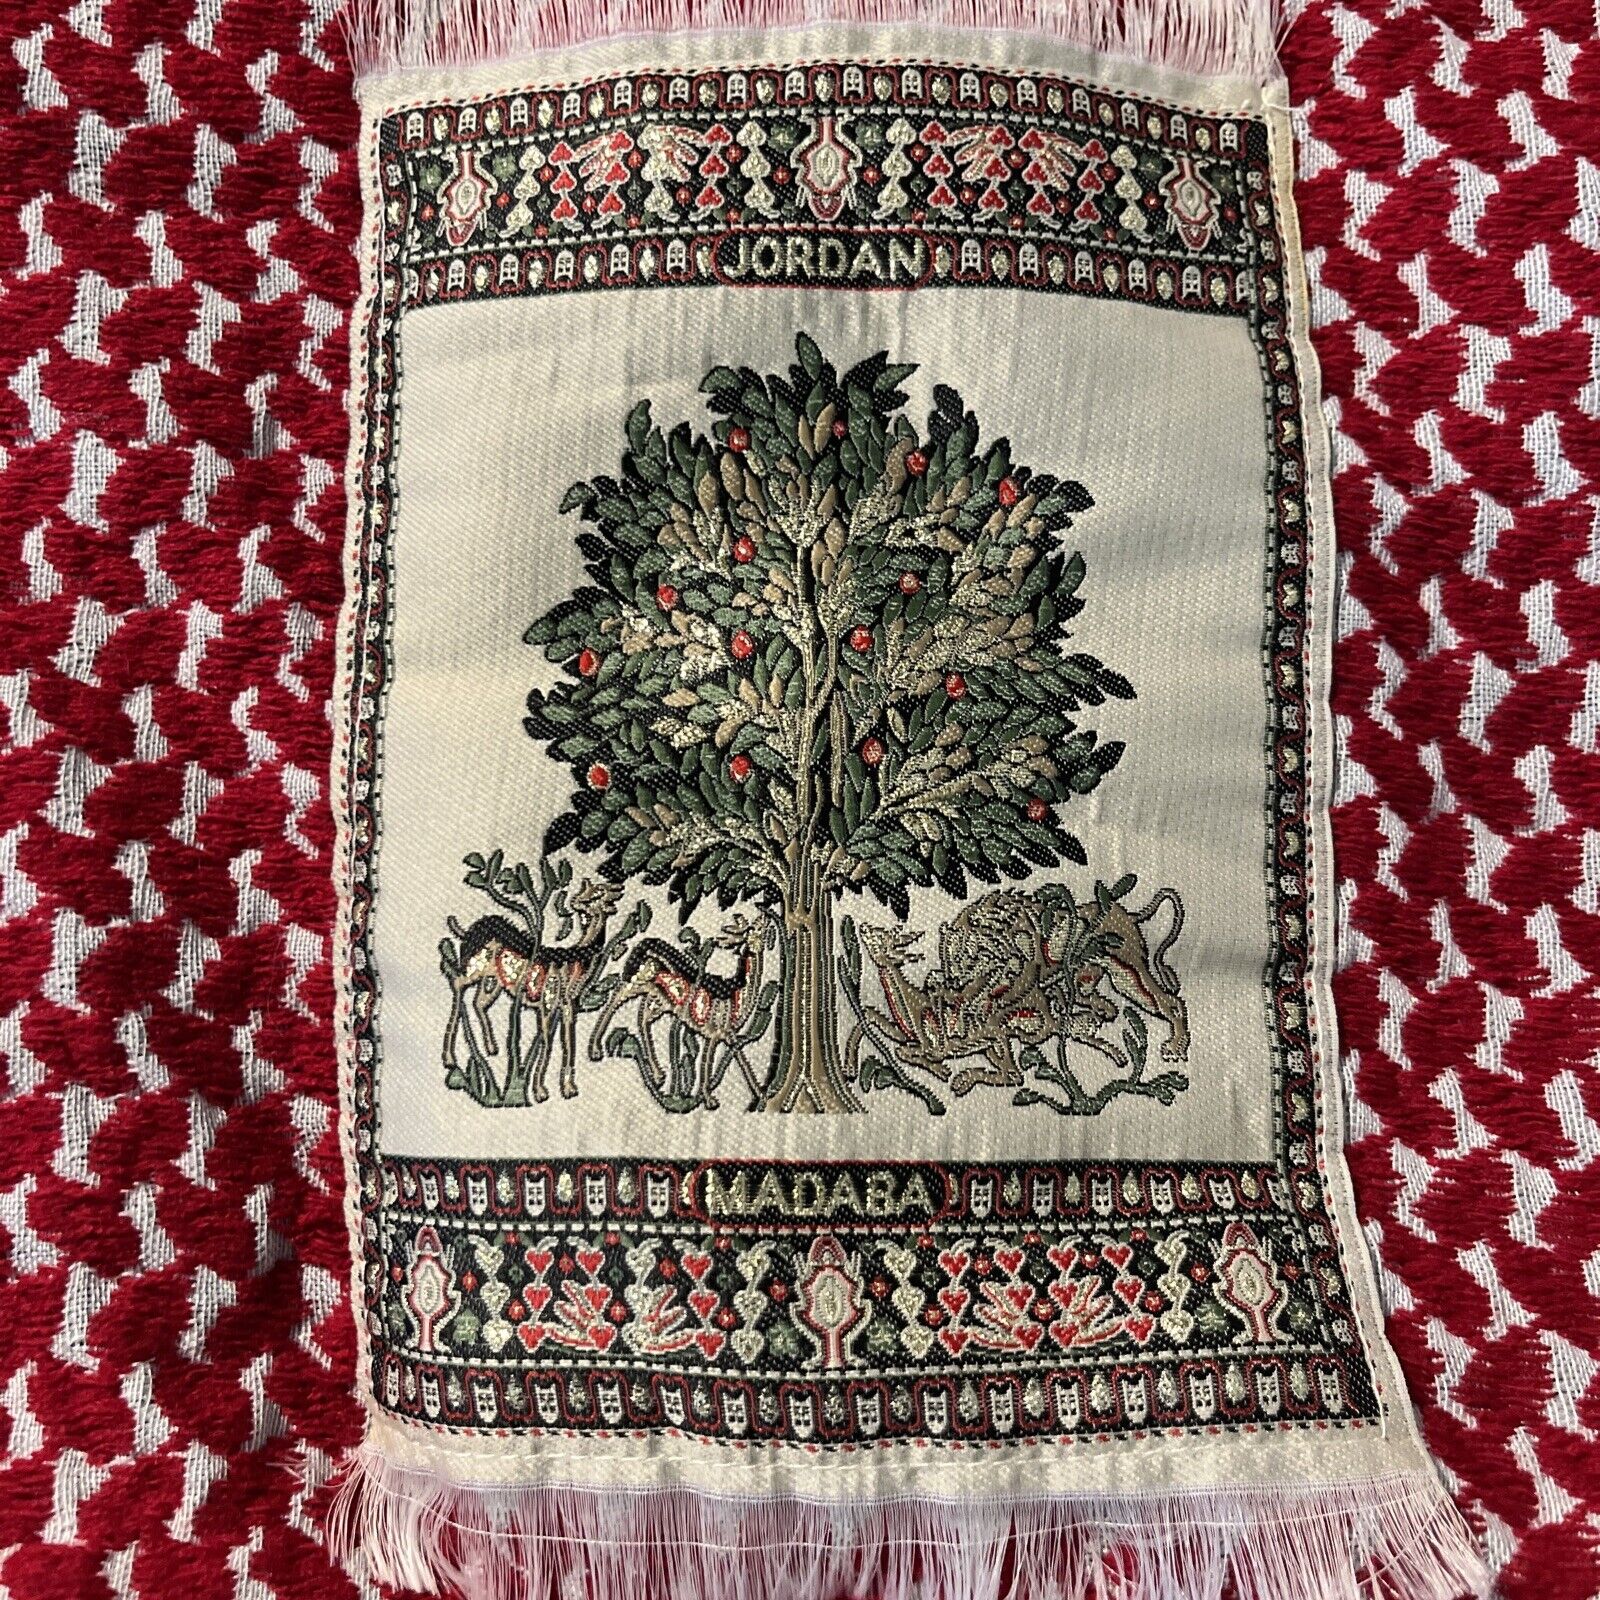 Madaba Jordan Hand Made Decorative Shoulder Bag Bedouin Jordanian Tree of Life